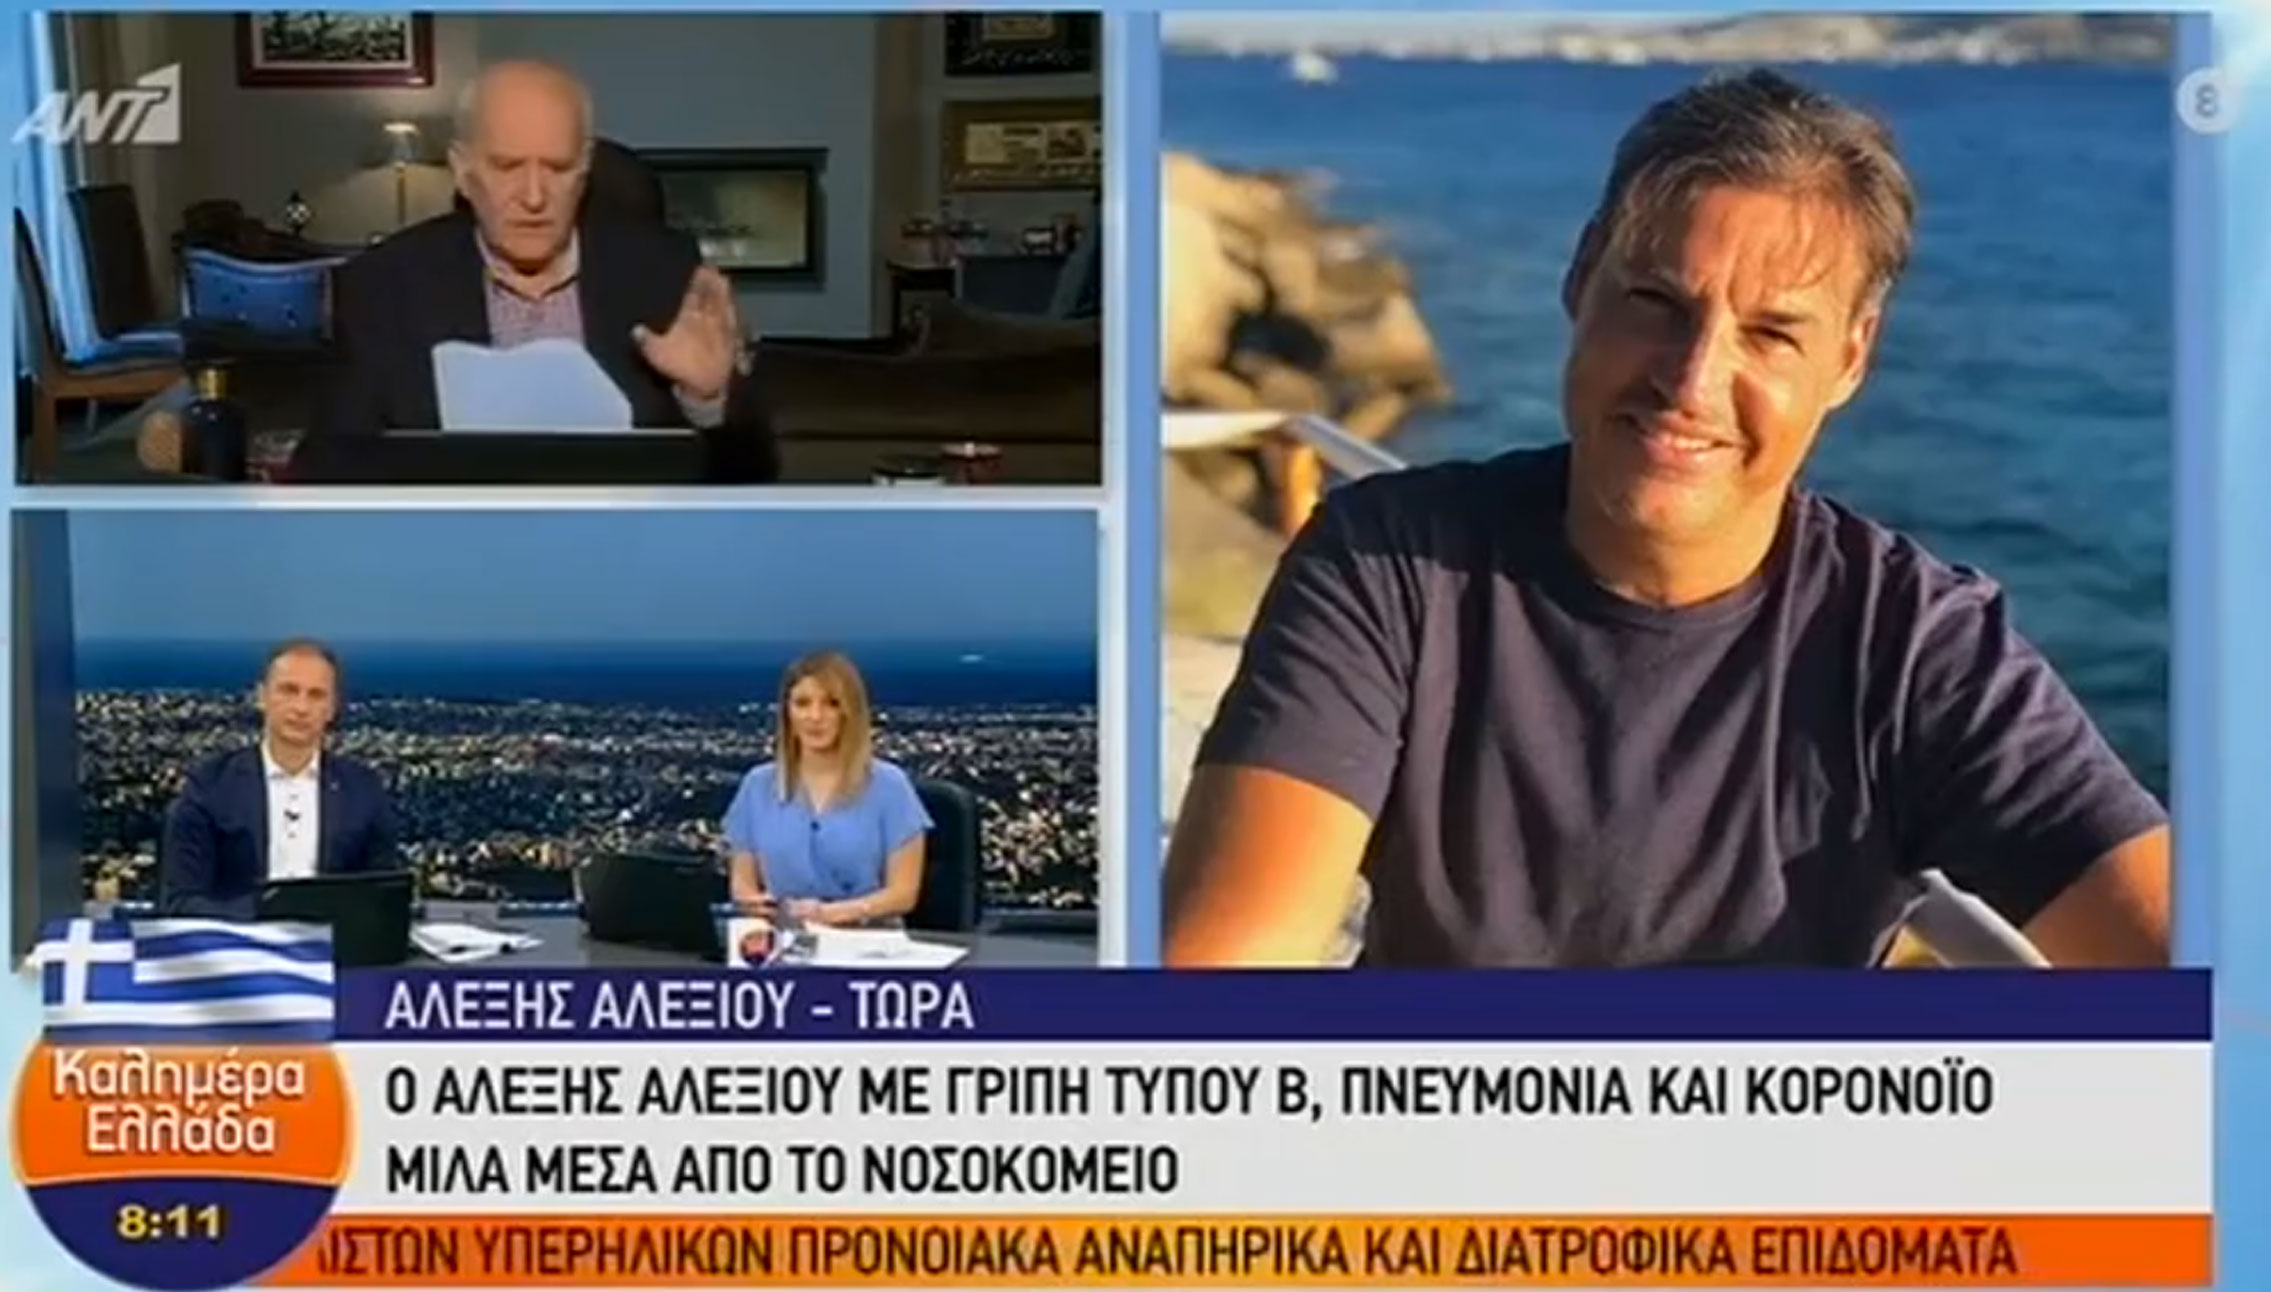 www.newsit.gr